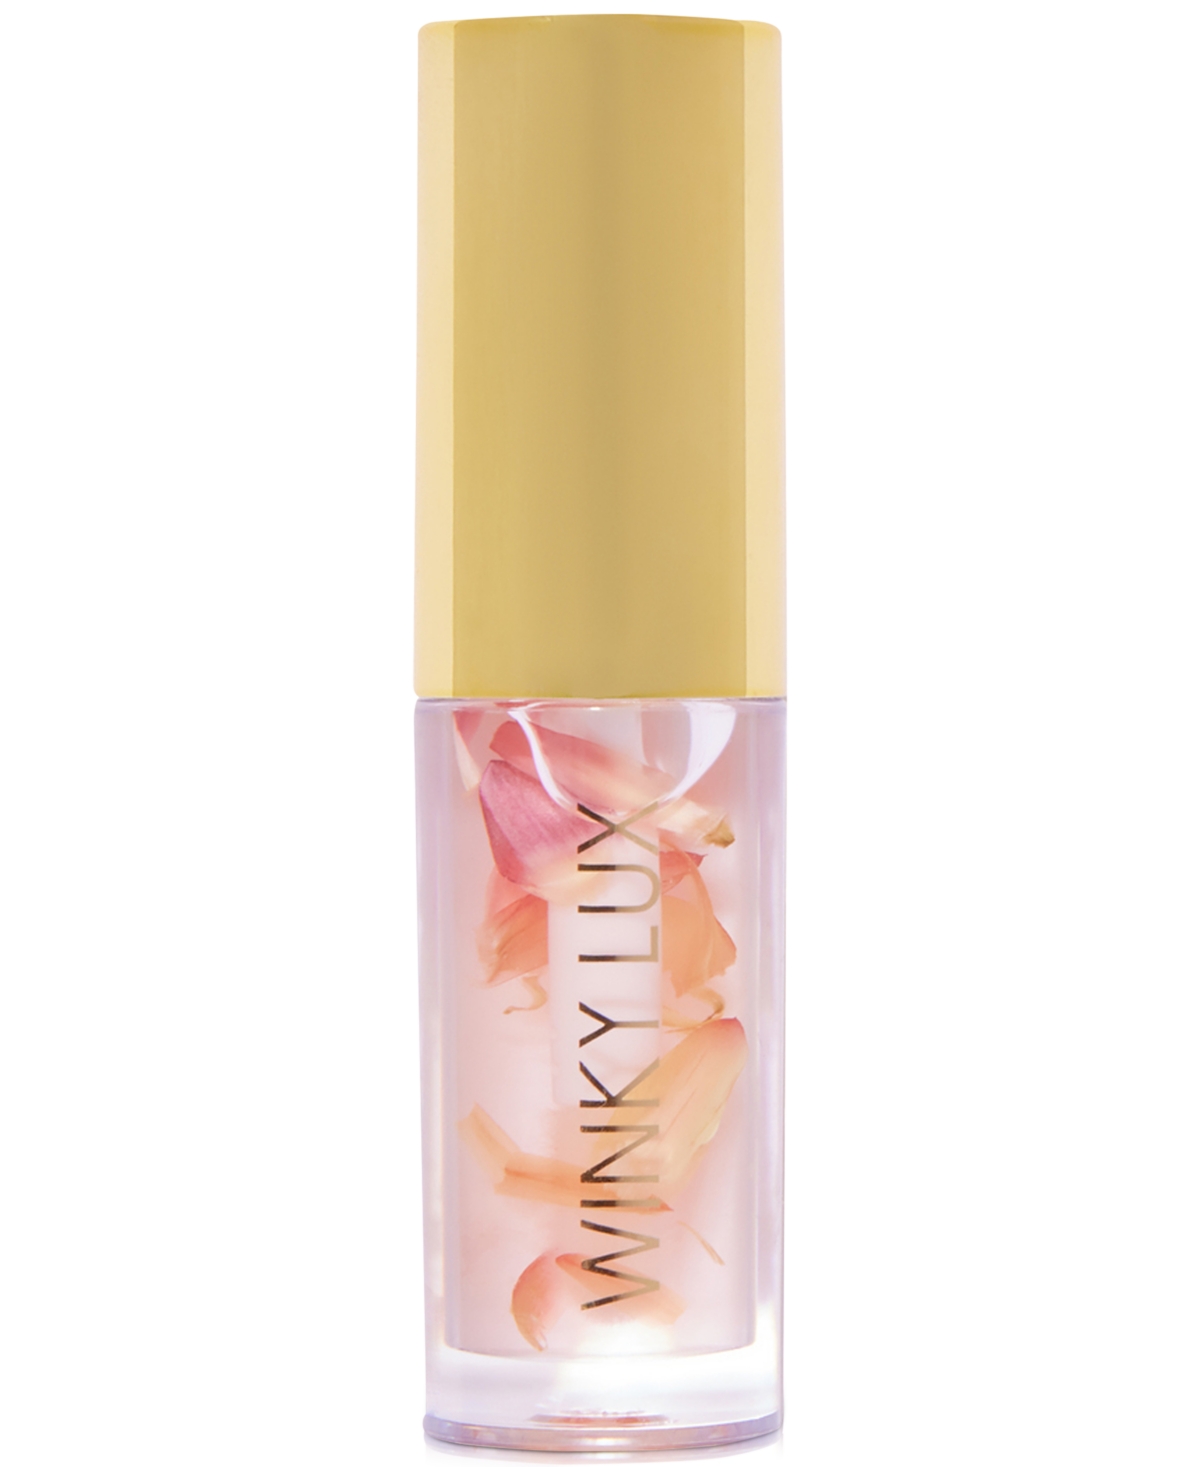 Shop Winky Lux Flower Petal Lip Oil In No Color